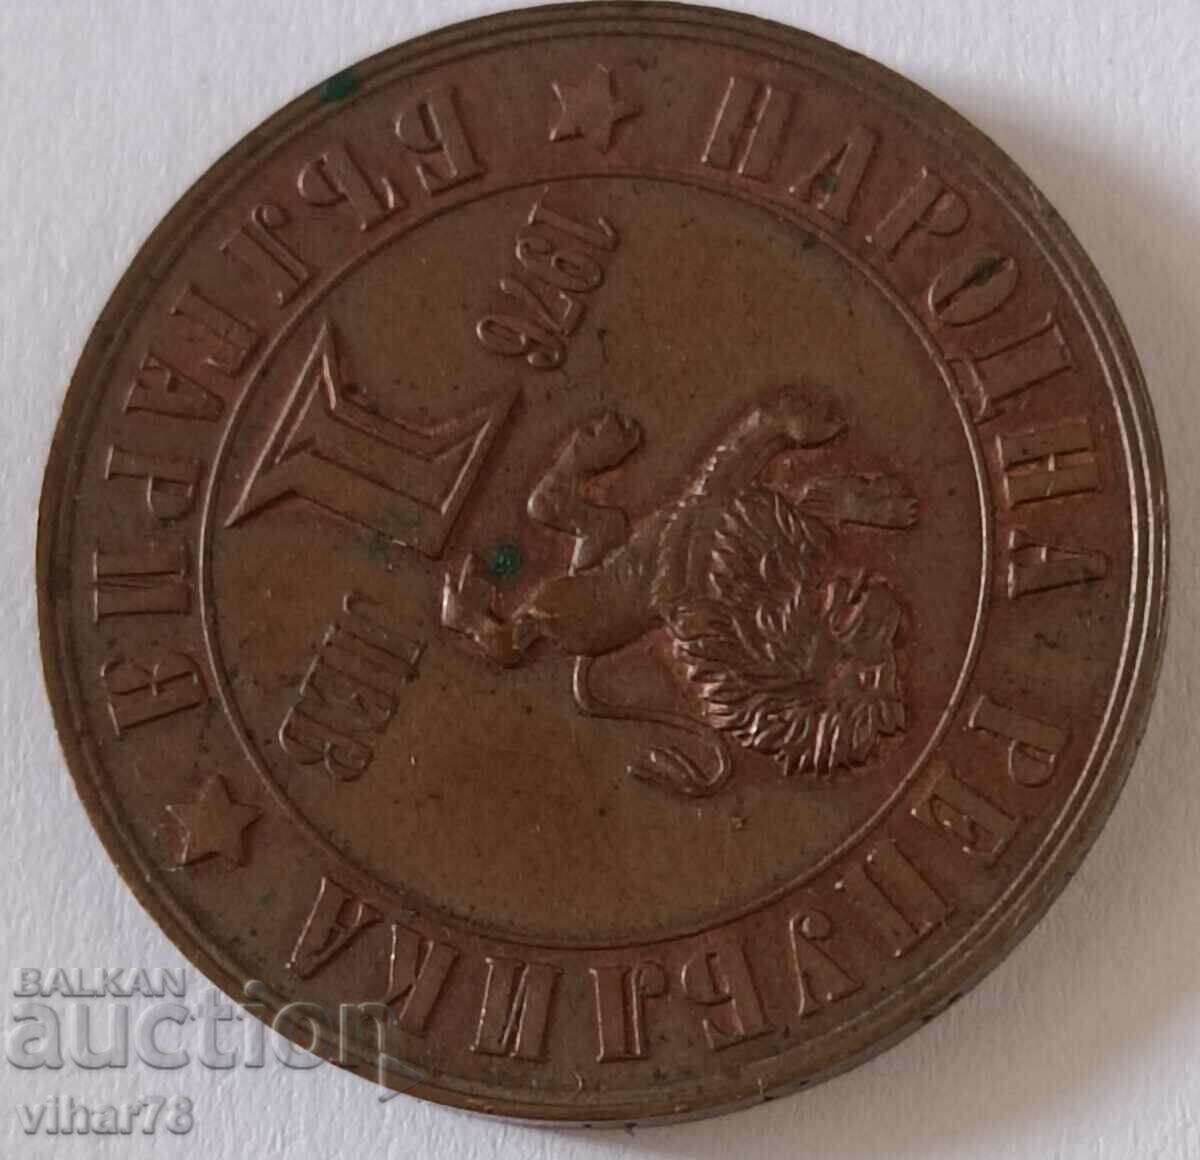 1 monedă BGN 1976